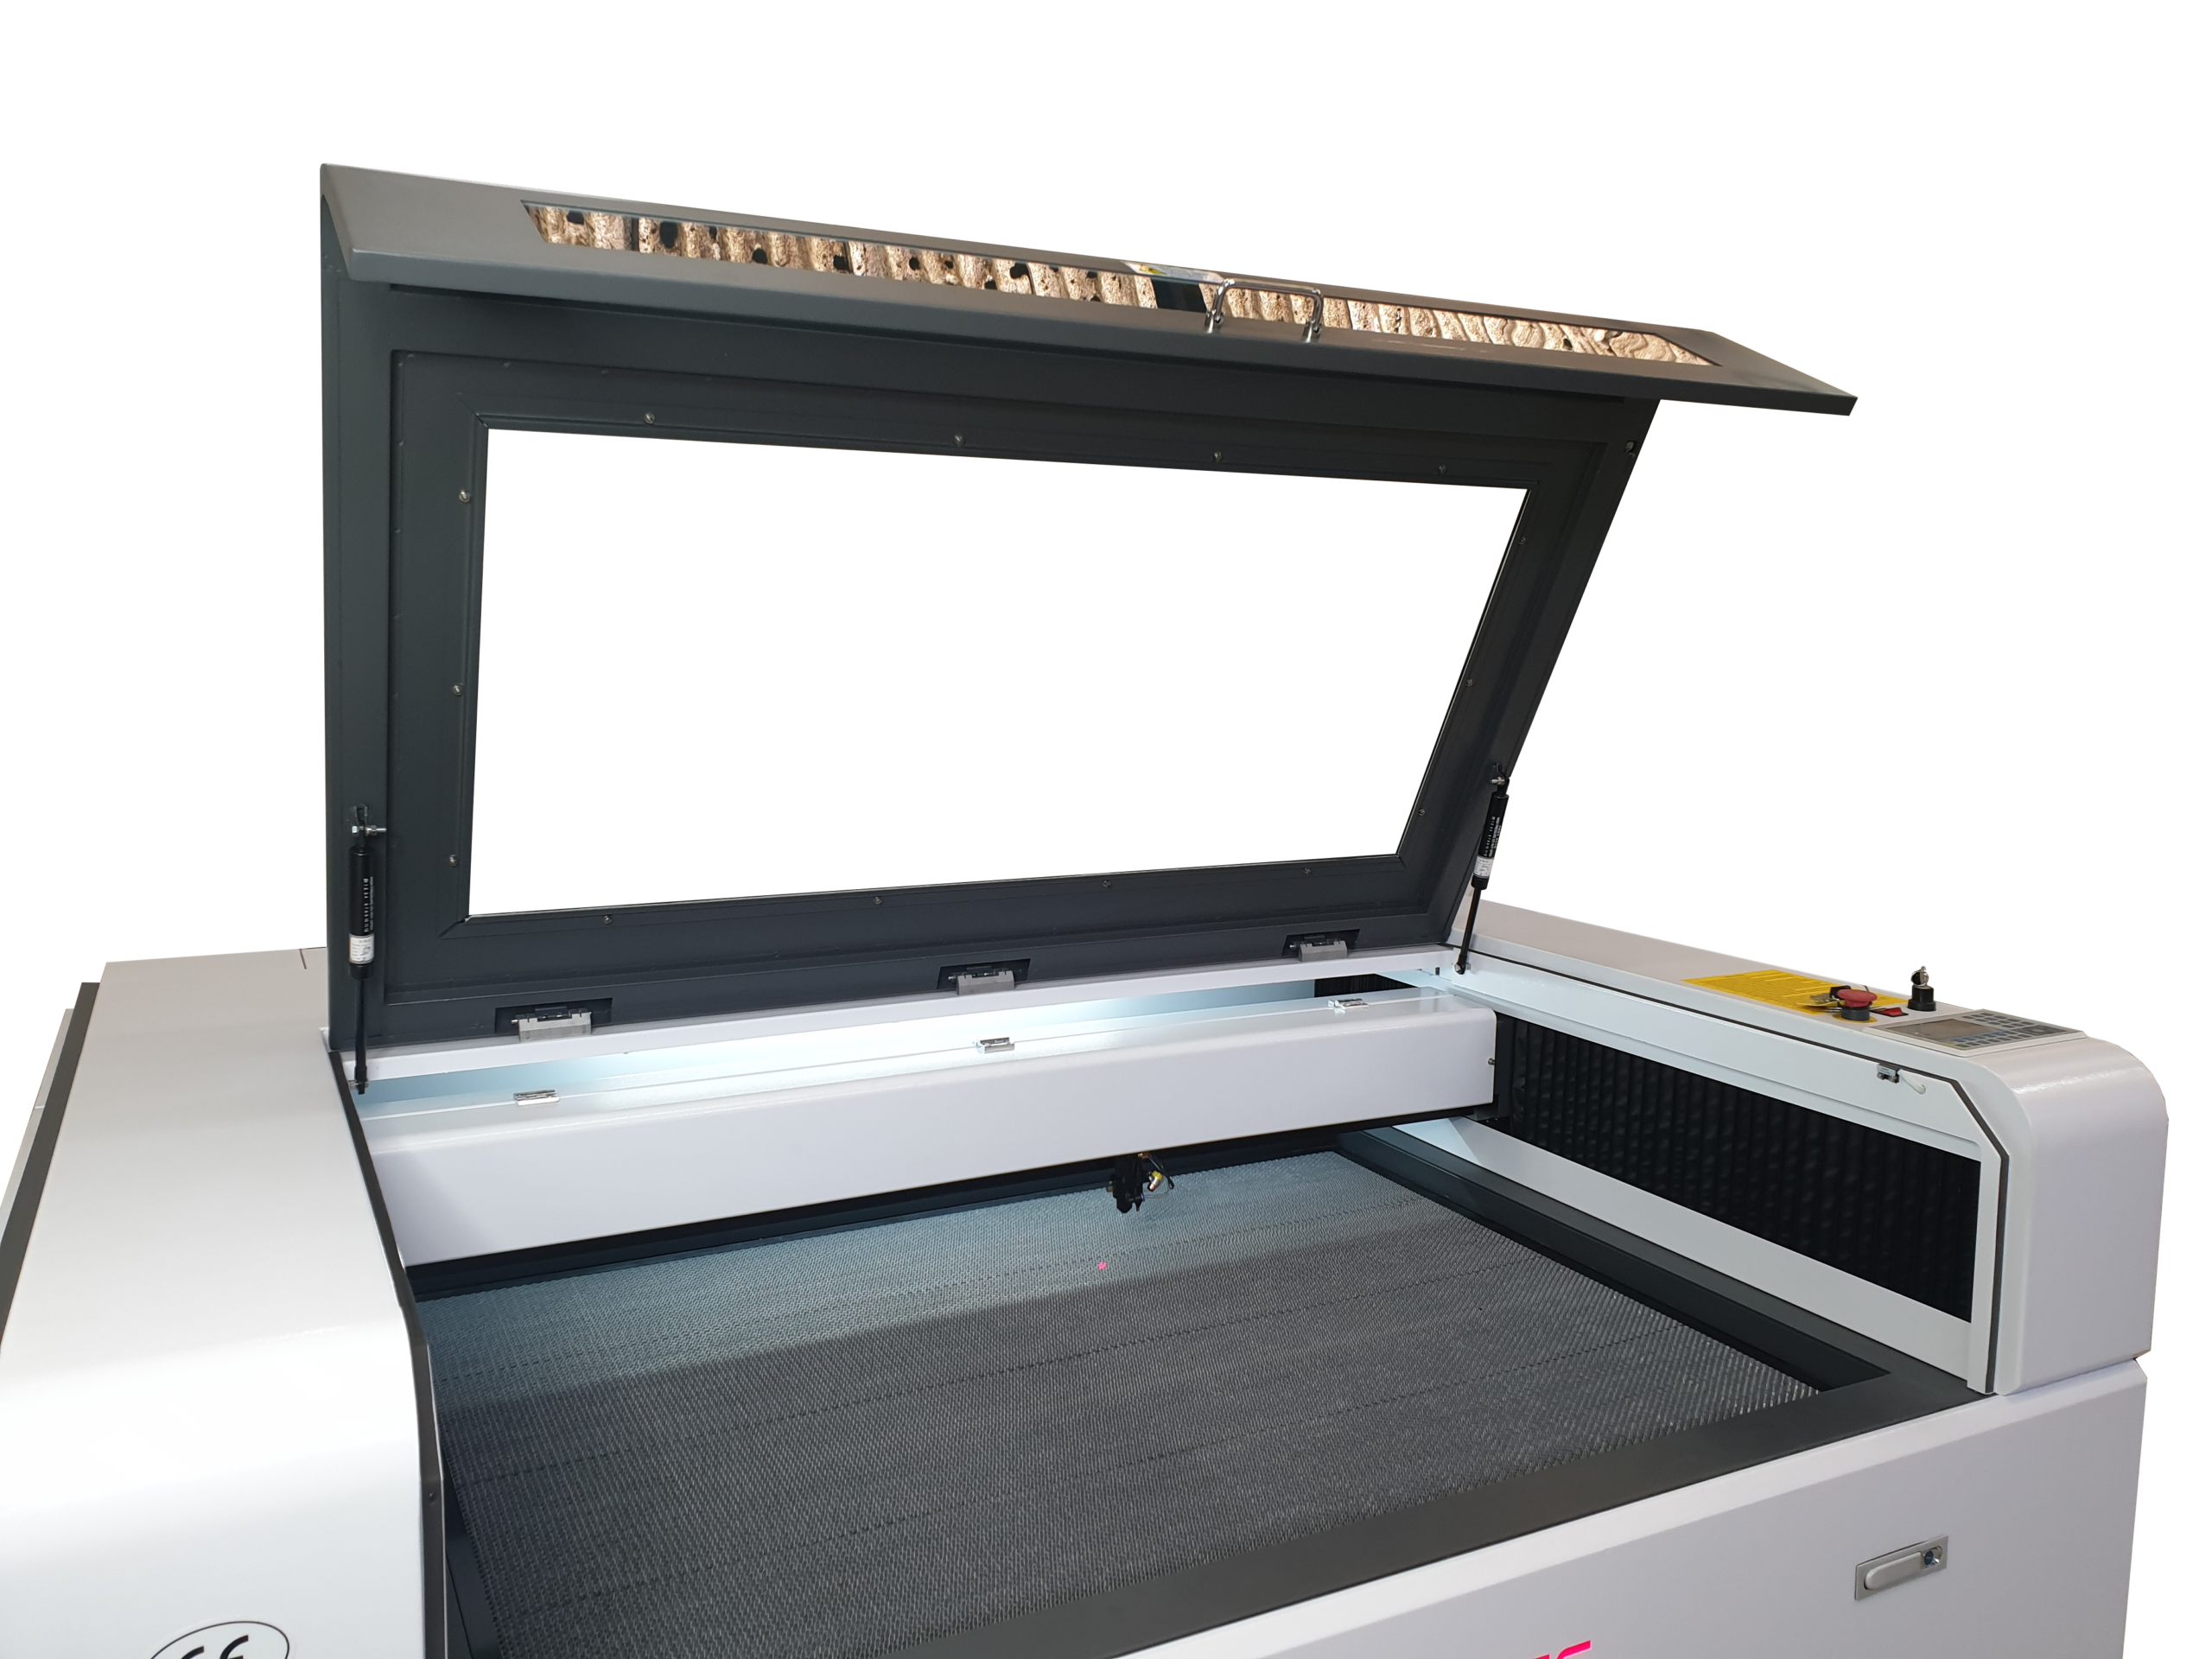 Machine de découpe et de gravure laser 1390 Mix - Dekcel